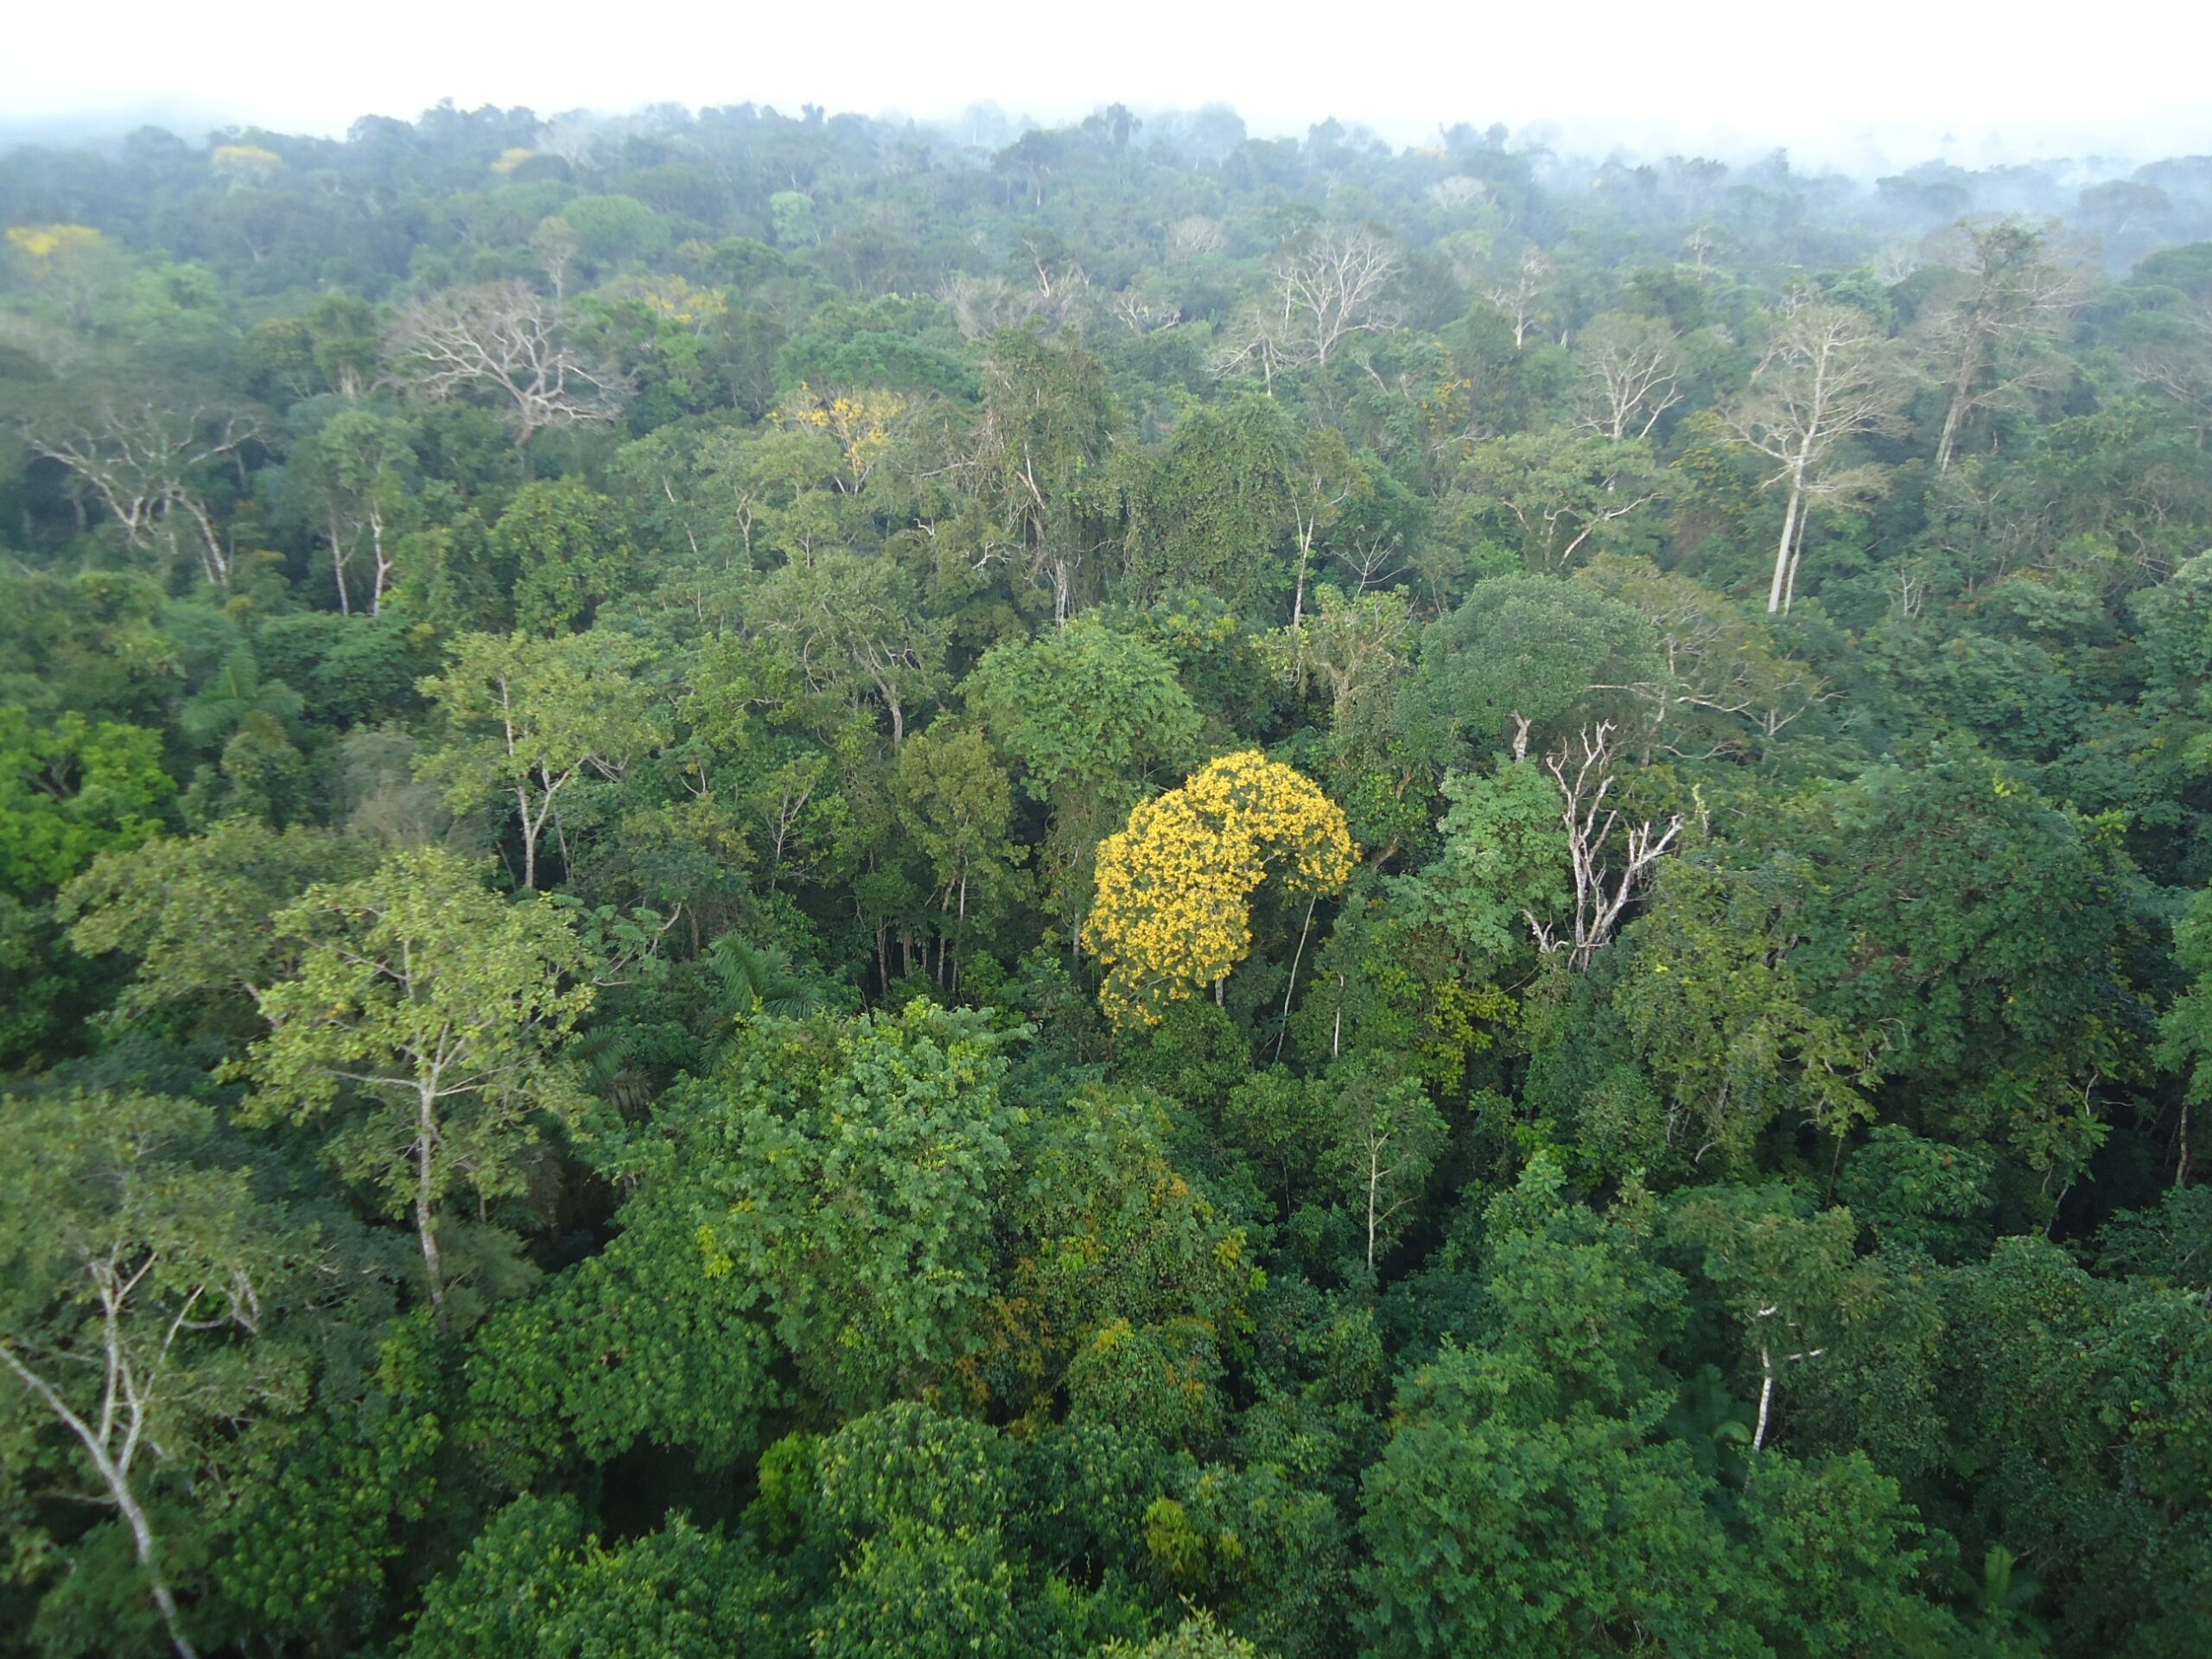 Entre 1978 e 2009, o Estado do Tocantins sofreu o maior nível de desmatamento no bioma Floresta Amazônica entre os estados da Amazônia Legal, perdendo 59,12% de sua área